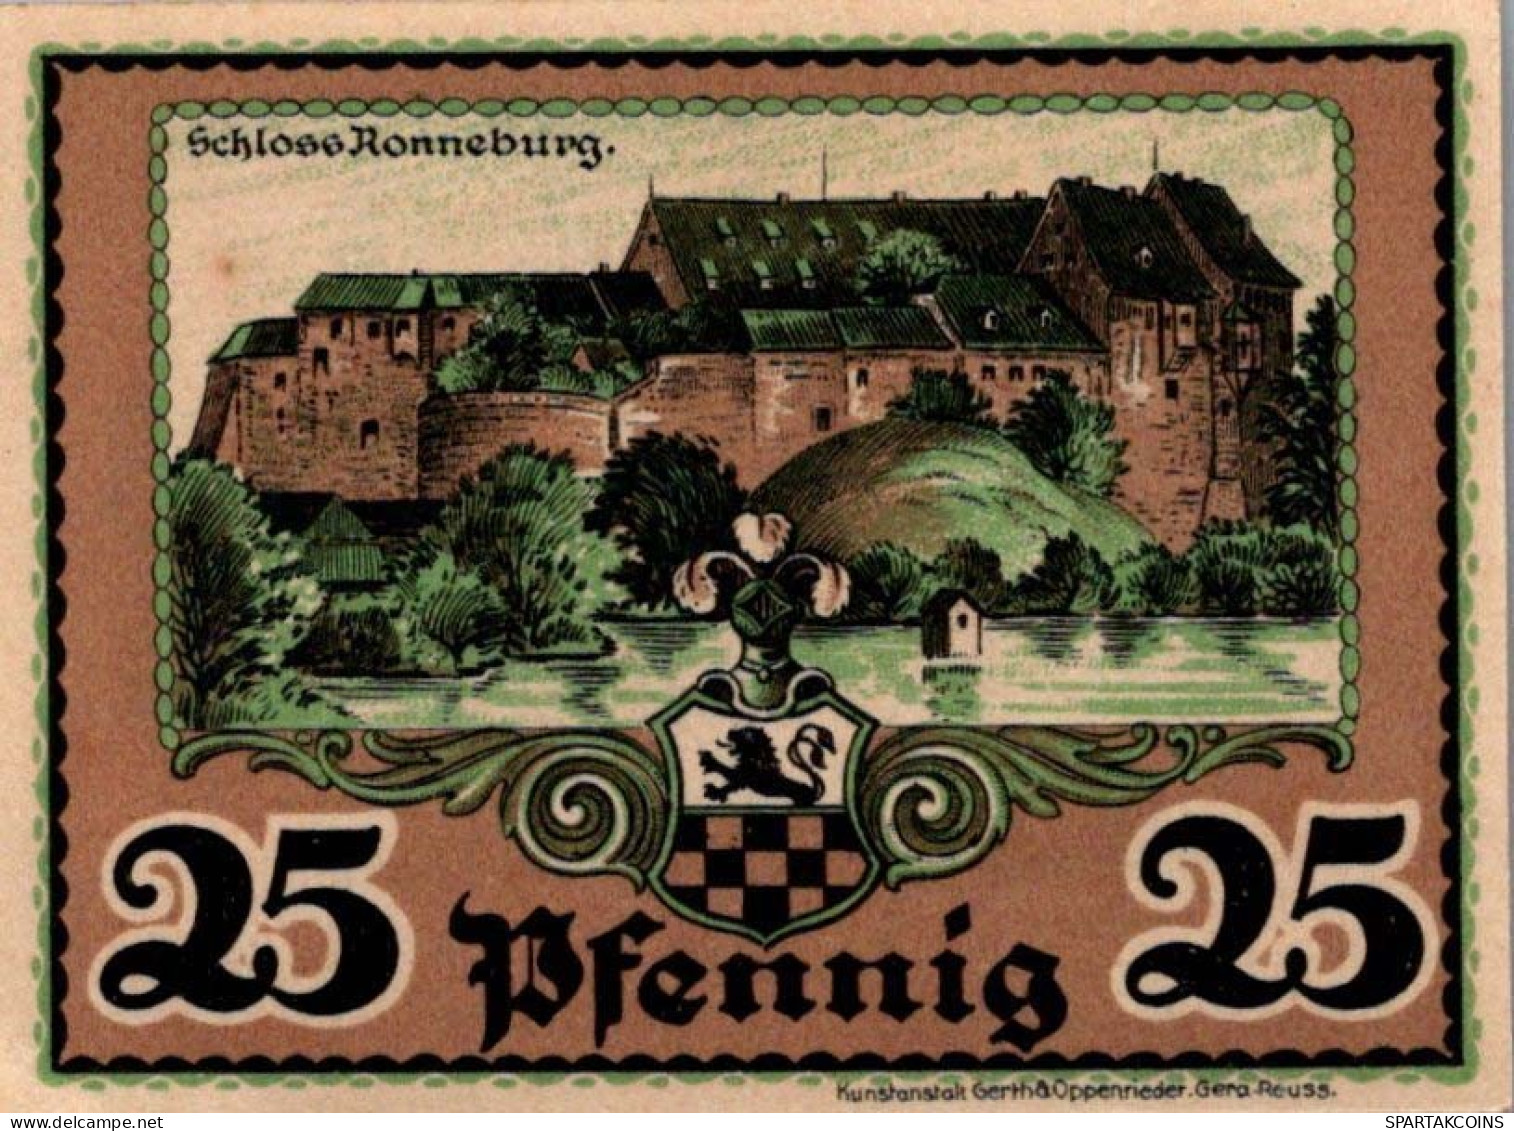 25 PFENNIG 1921 Stadt RONNEBURG Thuringia UNC DEUTSCHLAND Notgeld #PC333 - [11] Emissions Locales